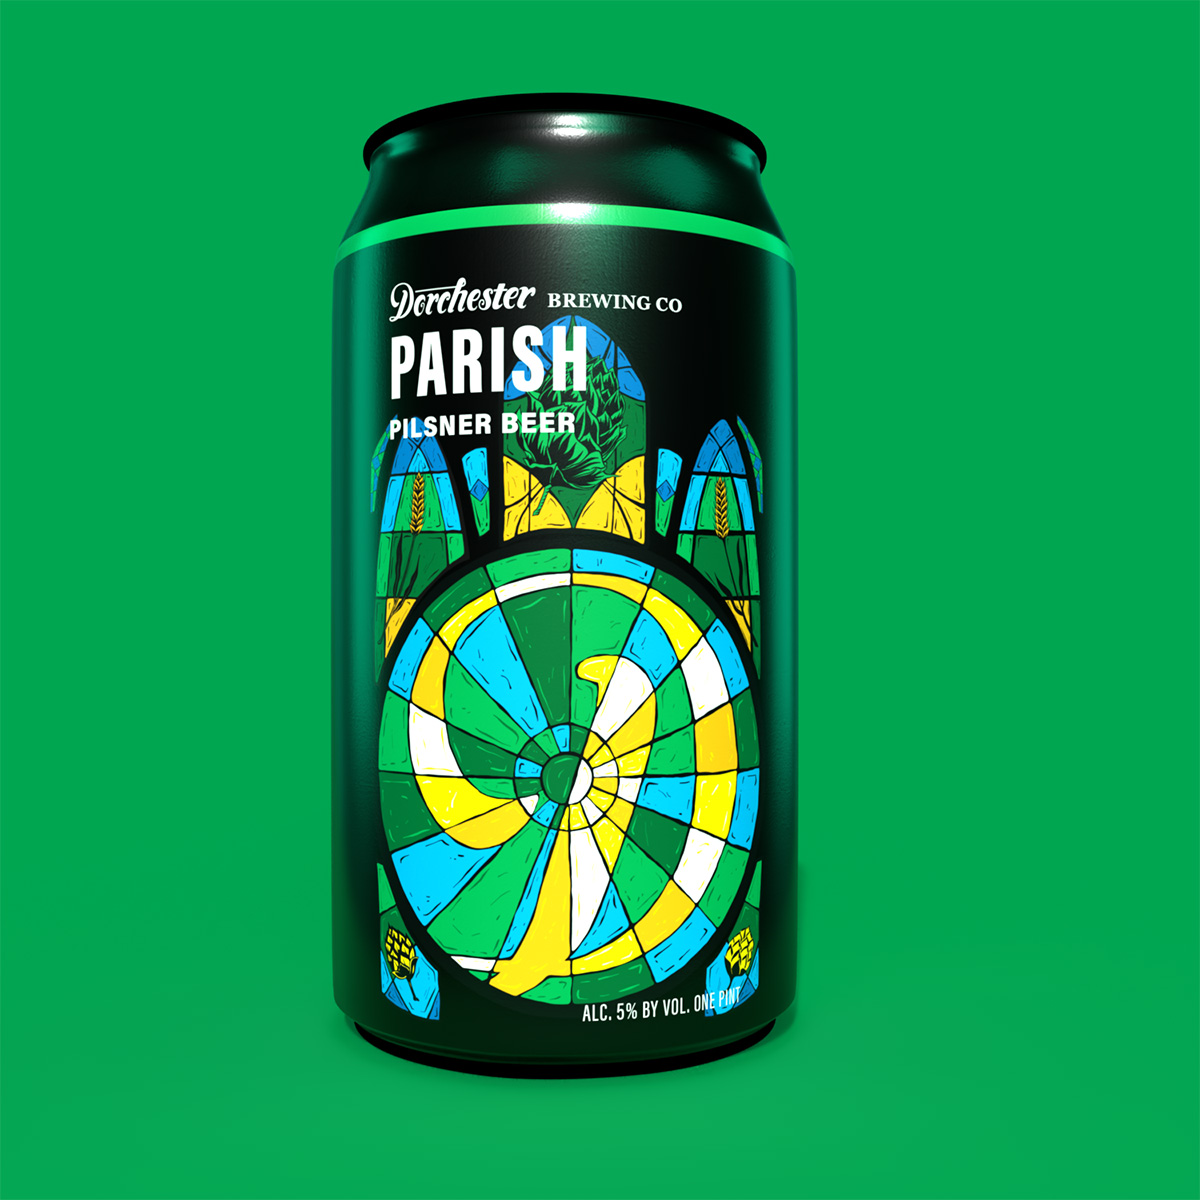 Dorchester-Brewery-web-hero-parish-Package-Design